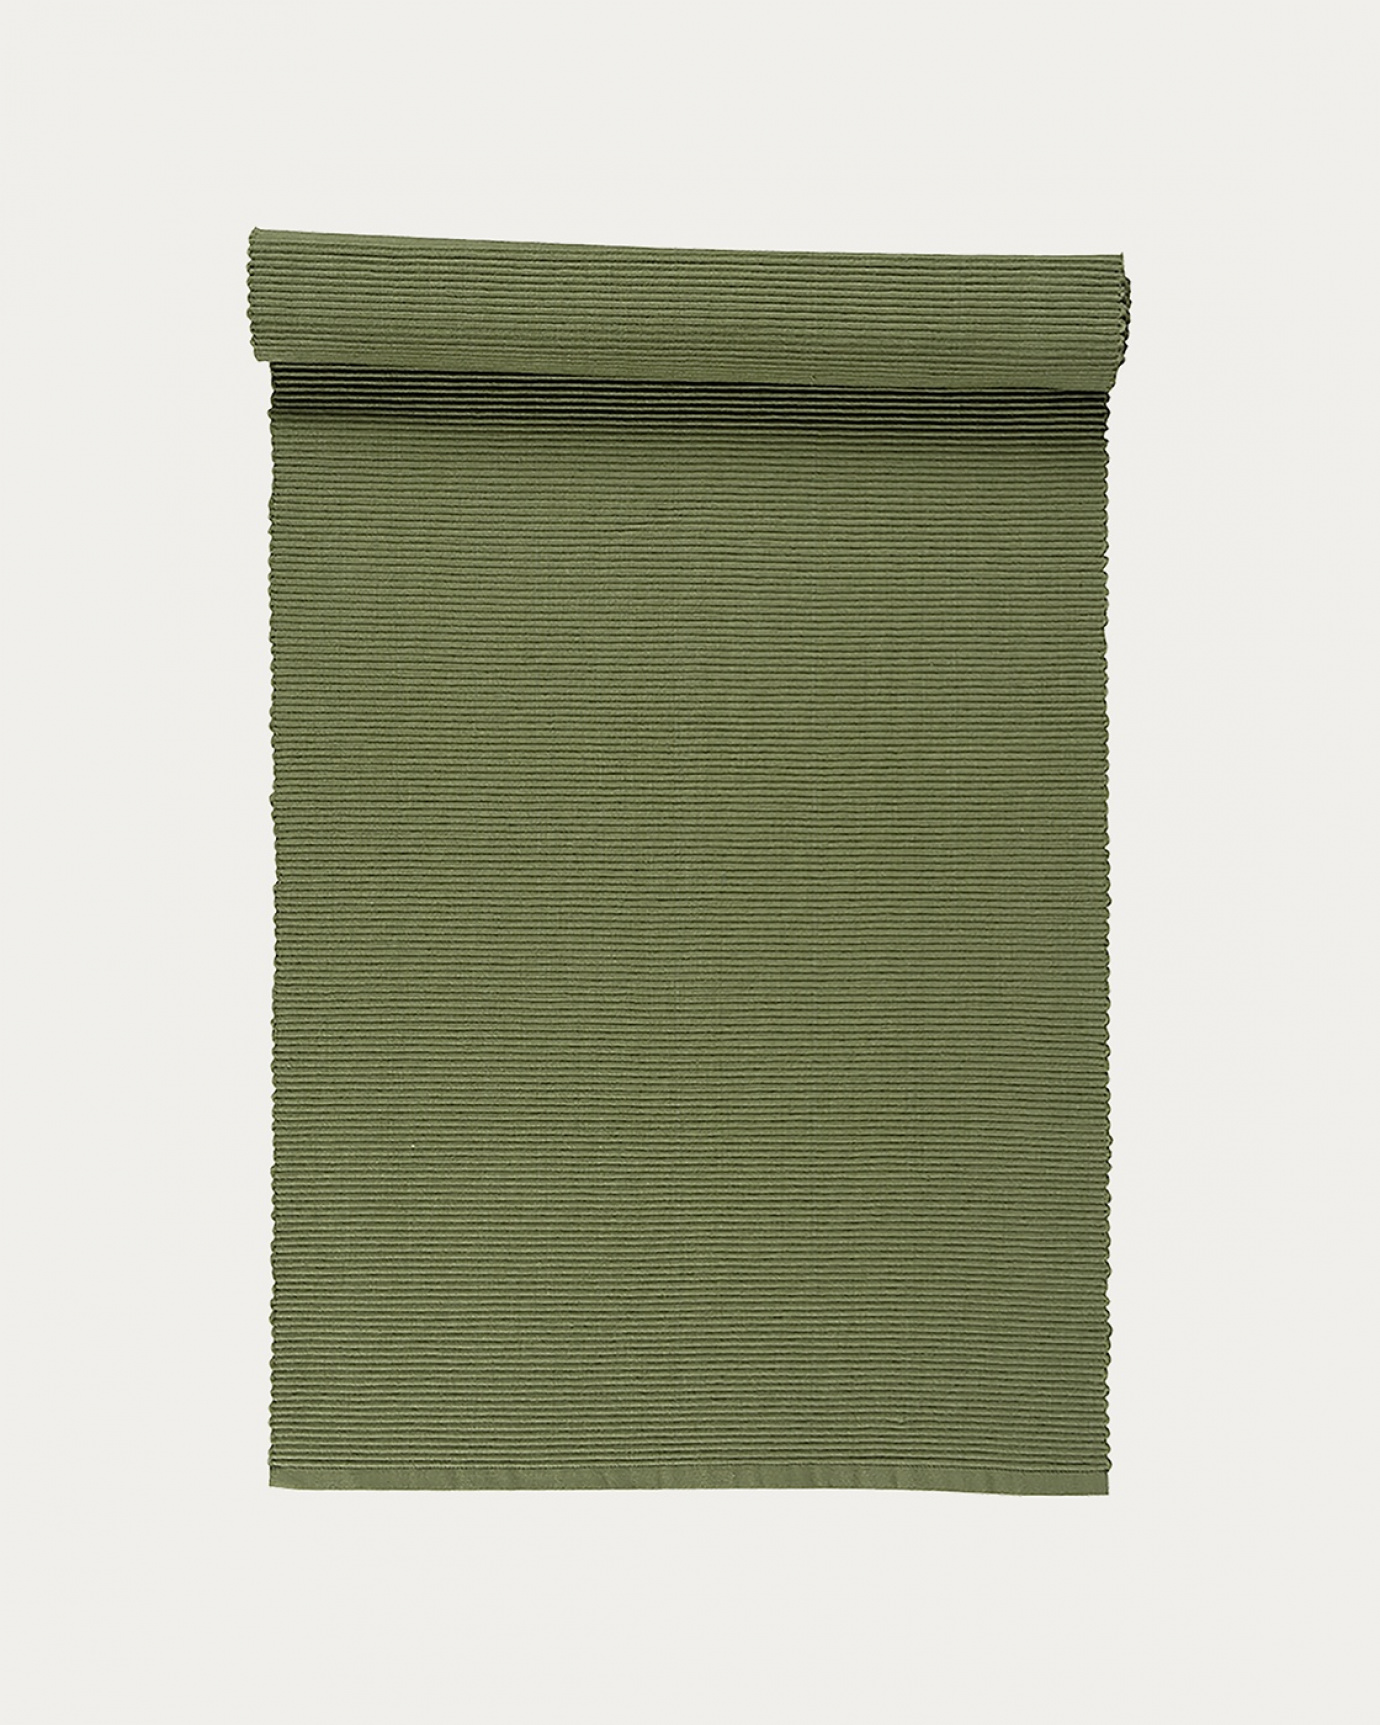 Image du produit chemin de table UNI vert cyprès clair en coton doux de qualité côtelée de LINUM DESIGN. Taille 45 x 150 cm.